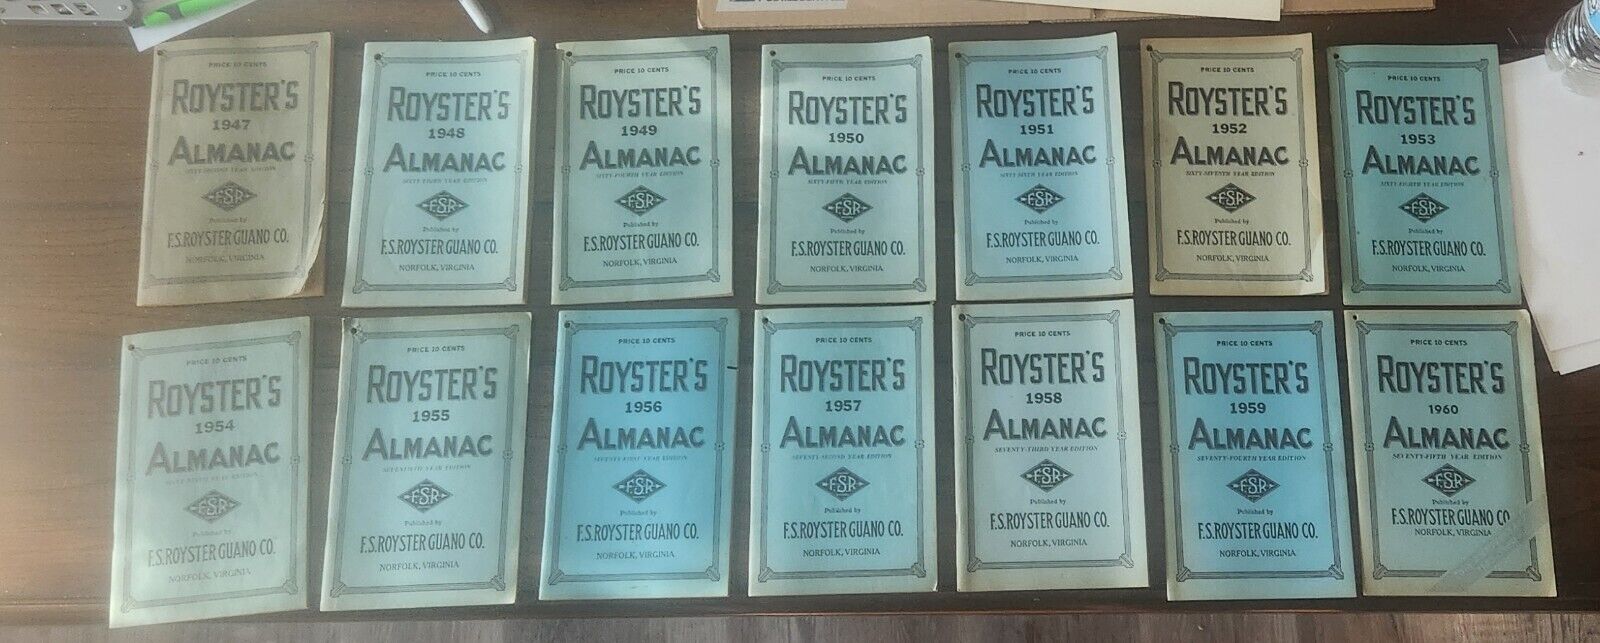 14 VINTAGE ROYSTERS ALMANAC, 1947 THRU 1960, Norfolk, Virginia, Read Description